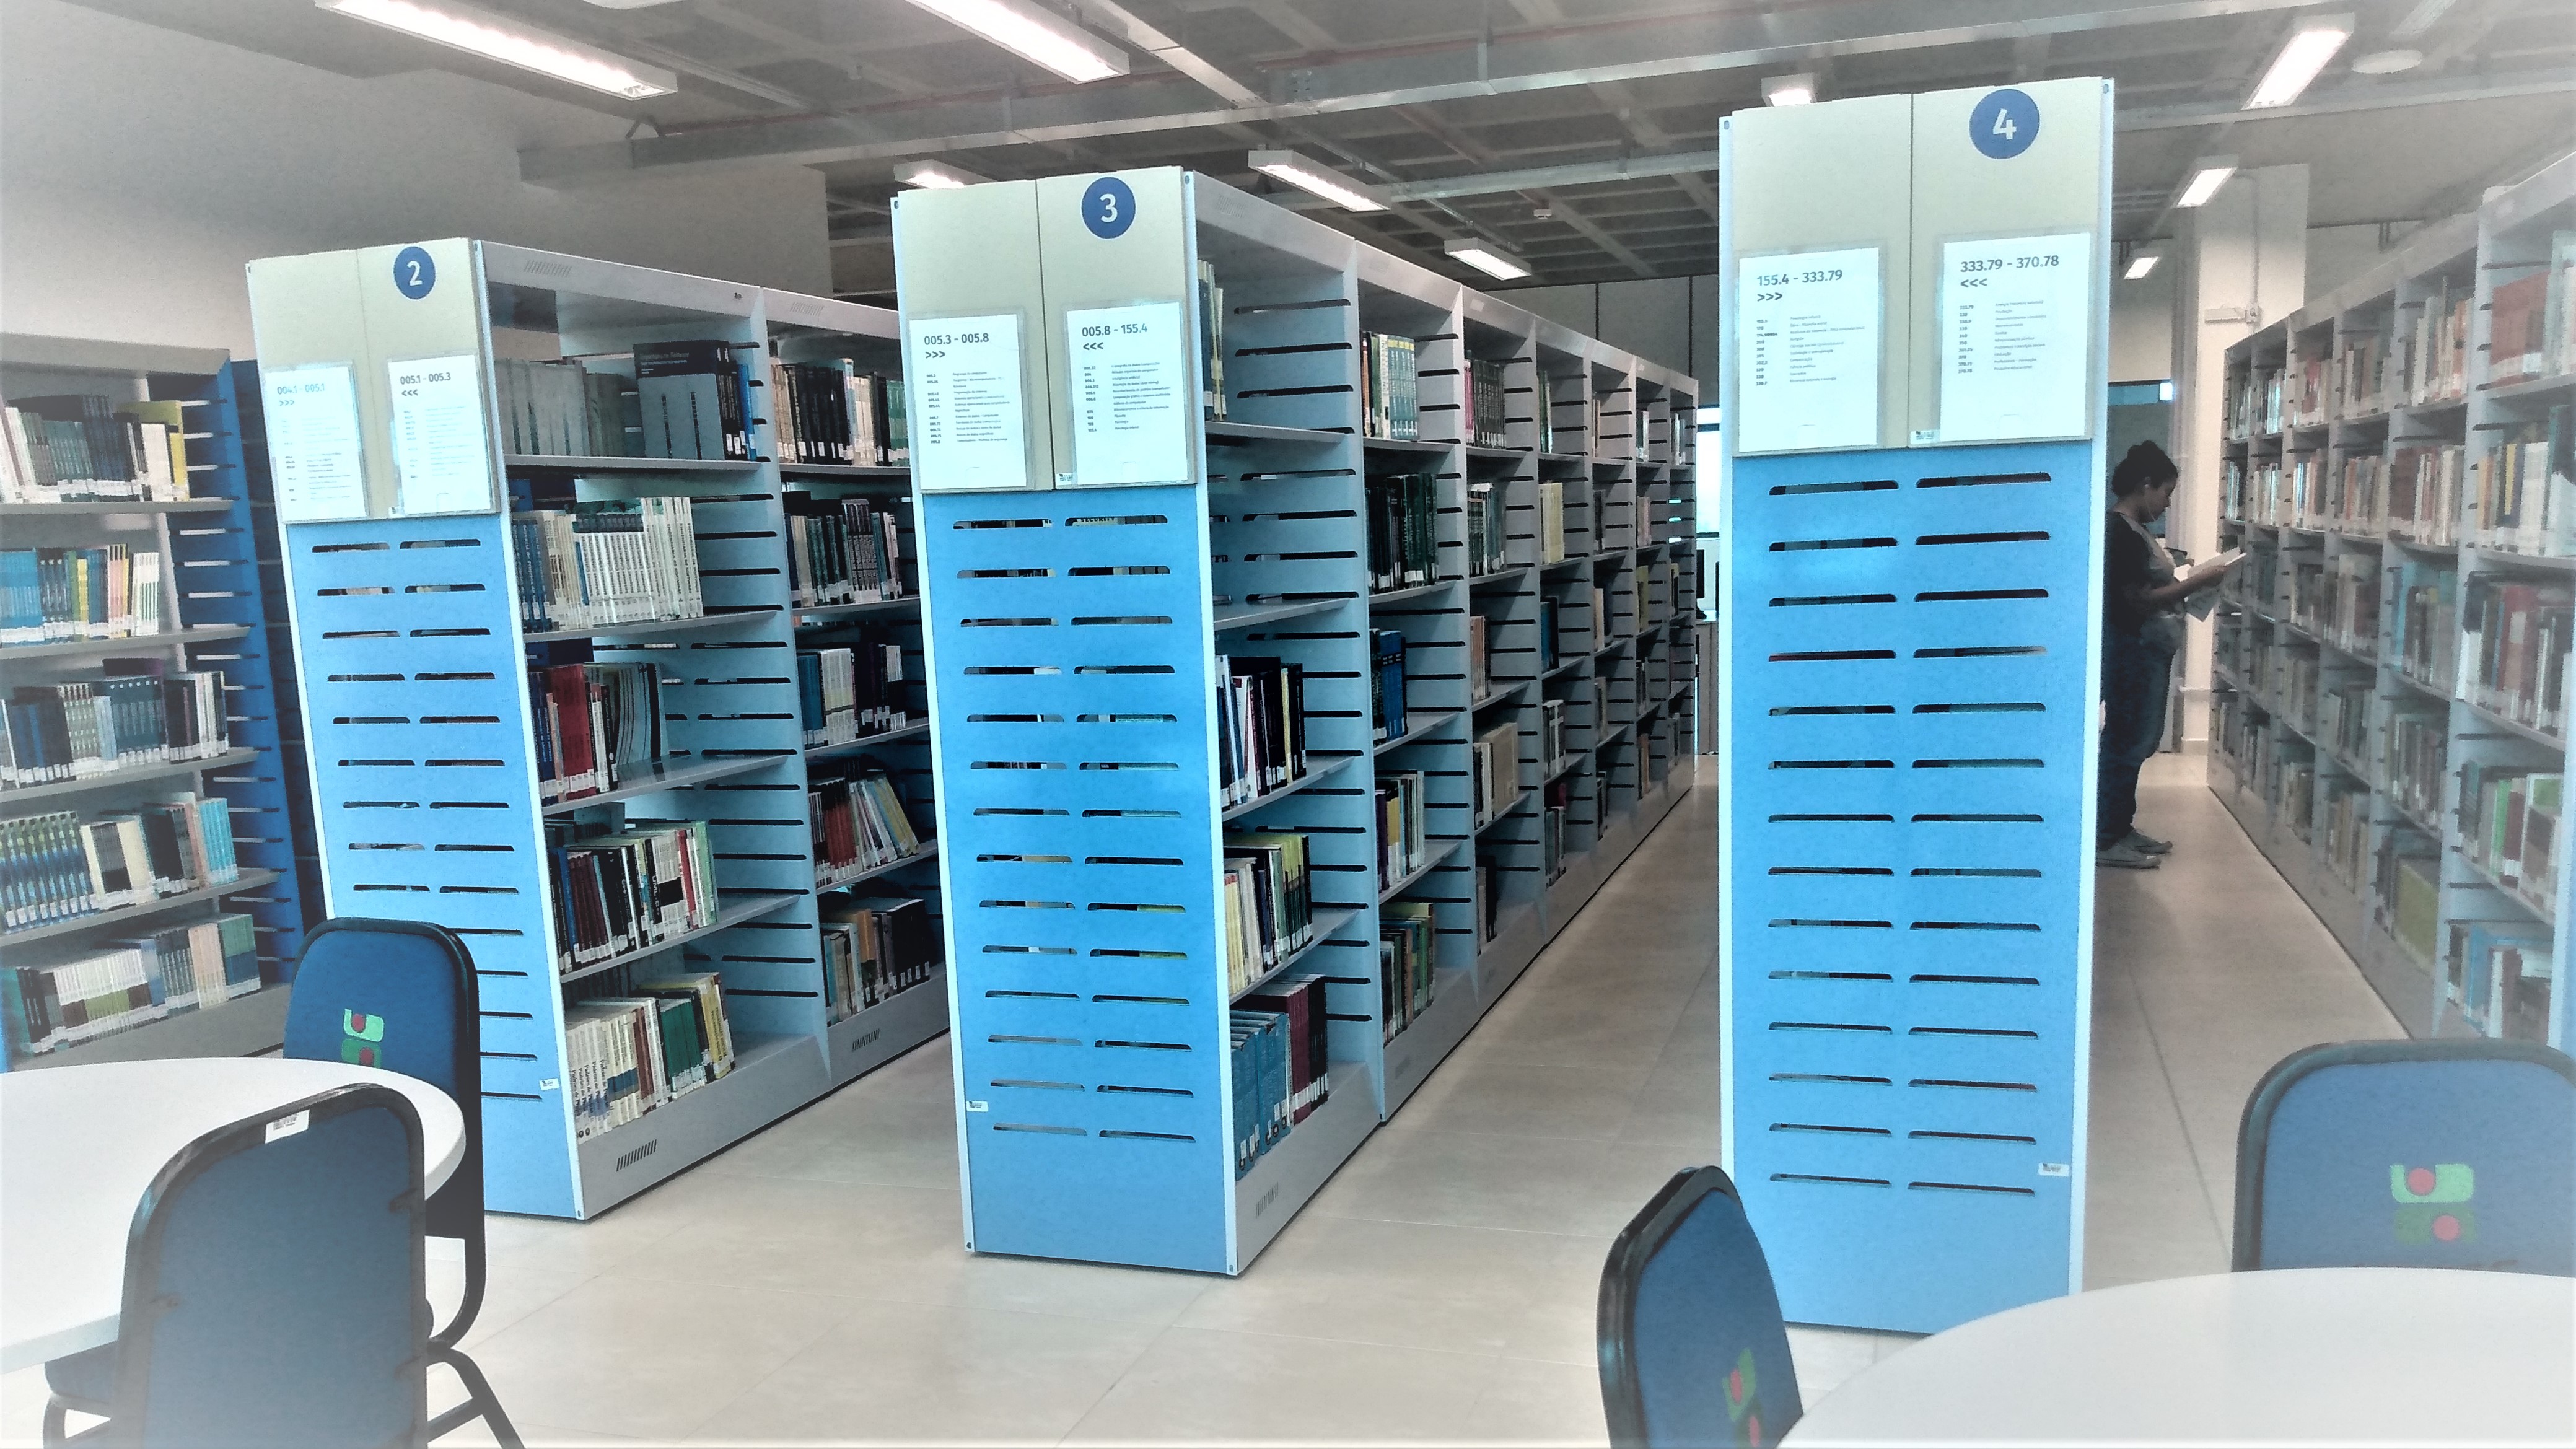 <p>Biblioteca Udesc Joinville</p>
